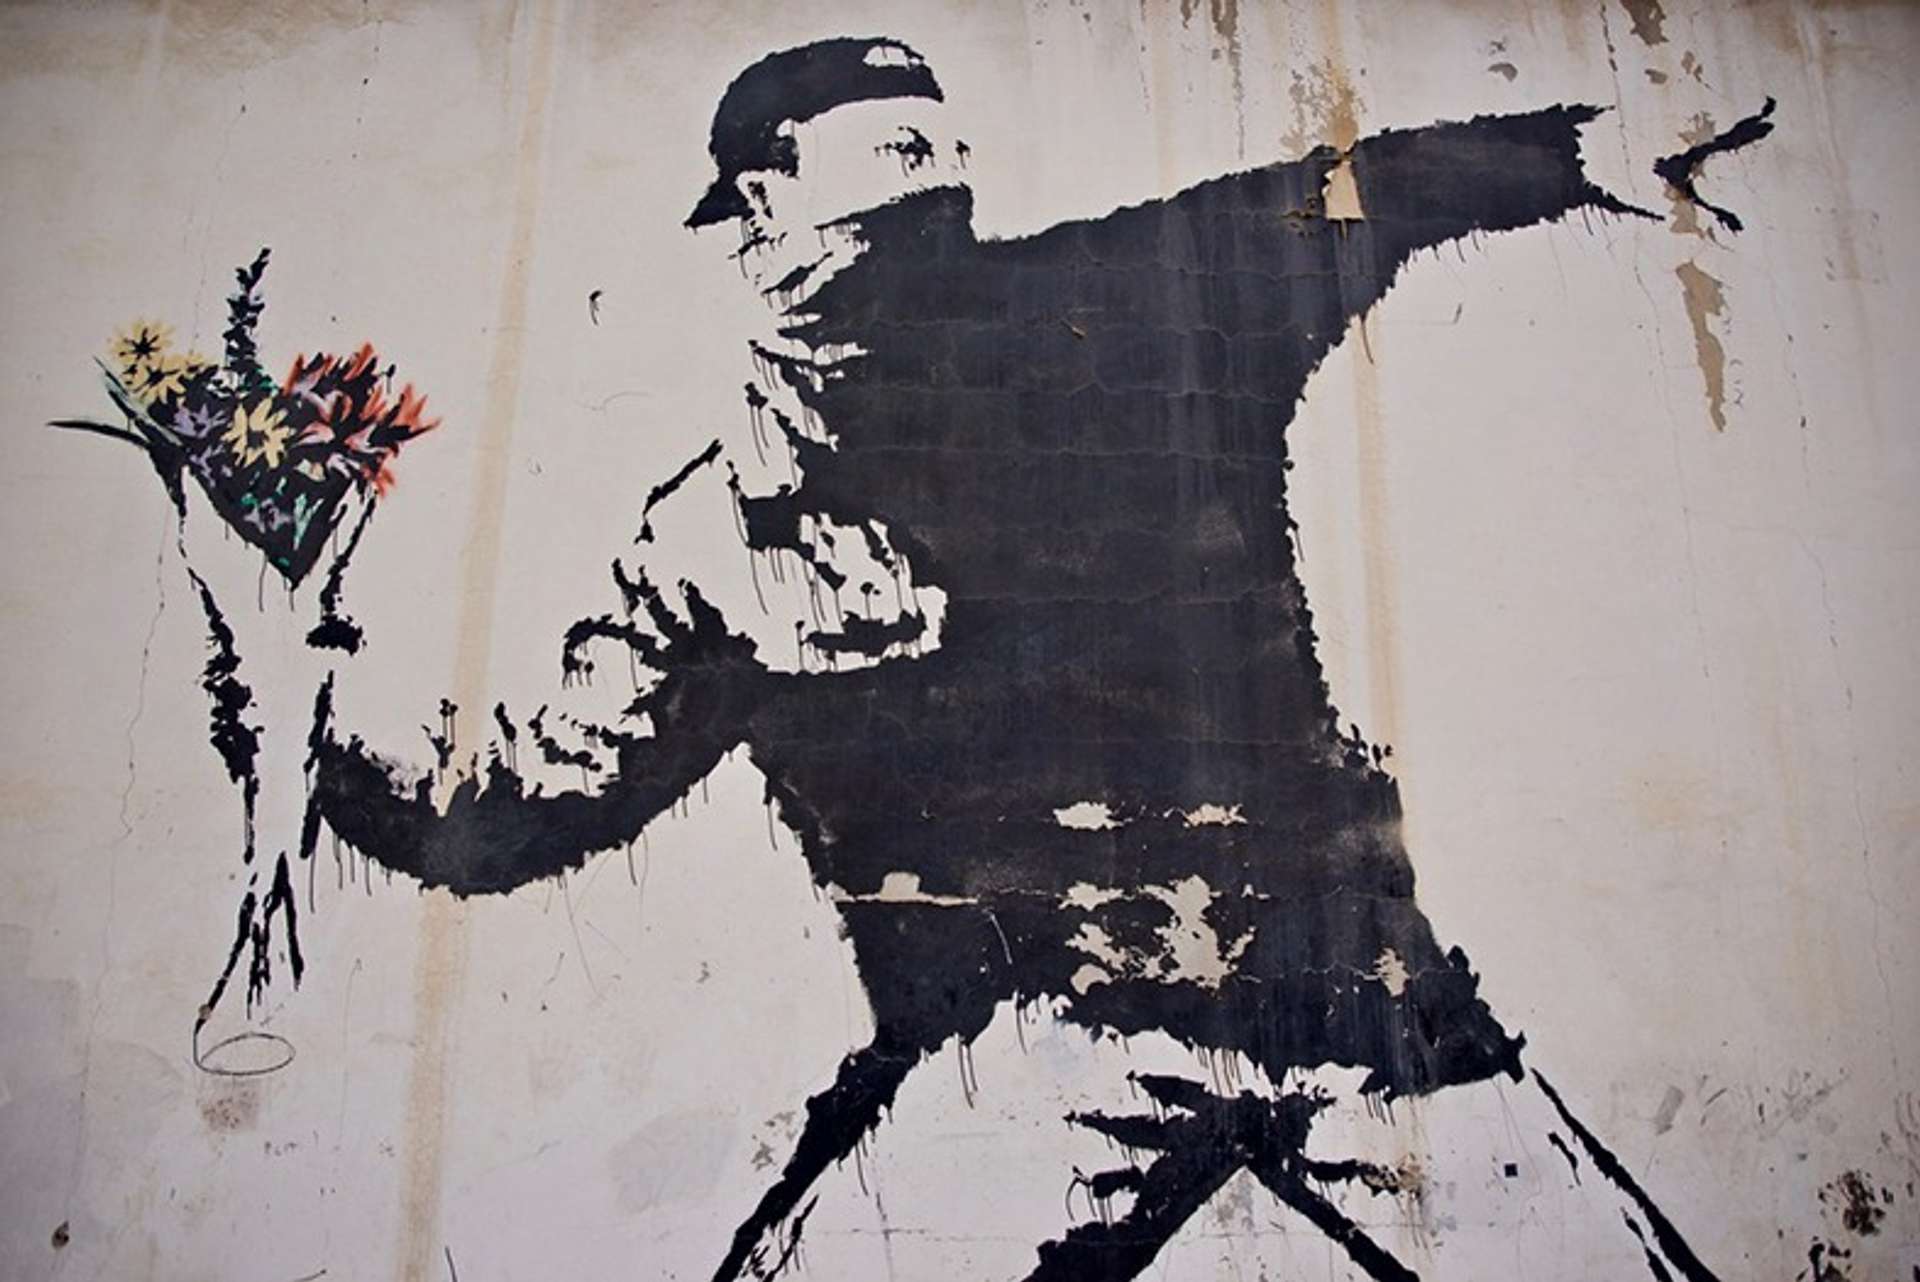 Flower Thrower Mural by Banksy 